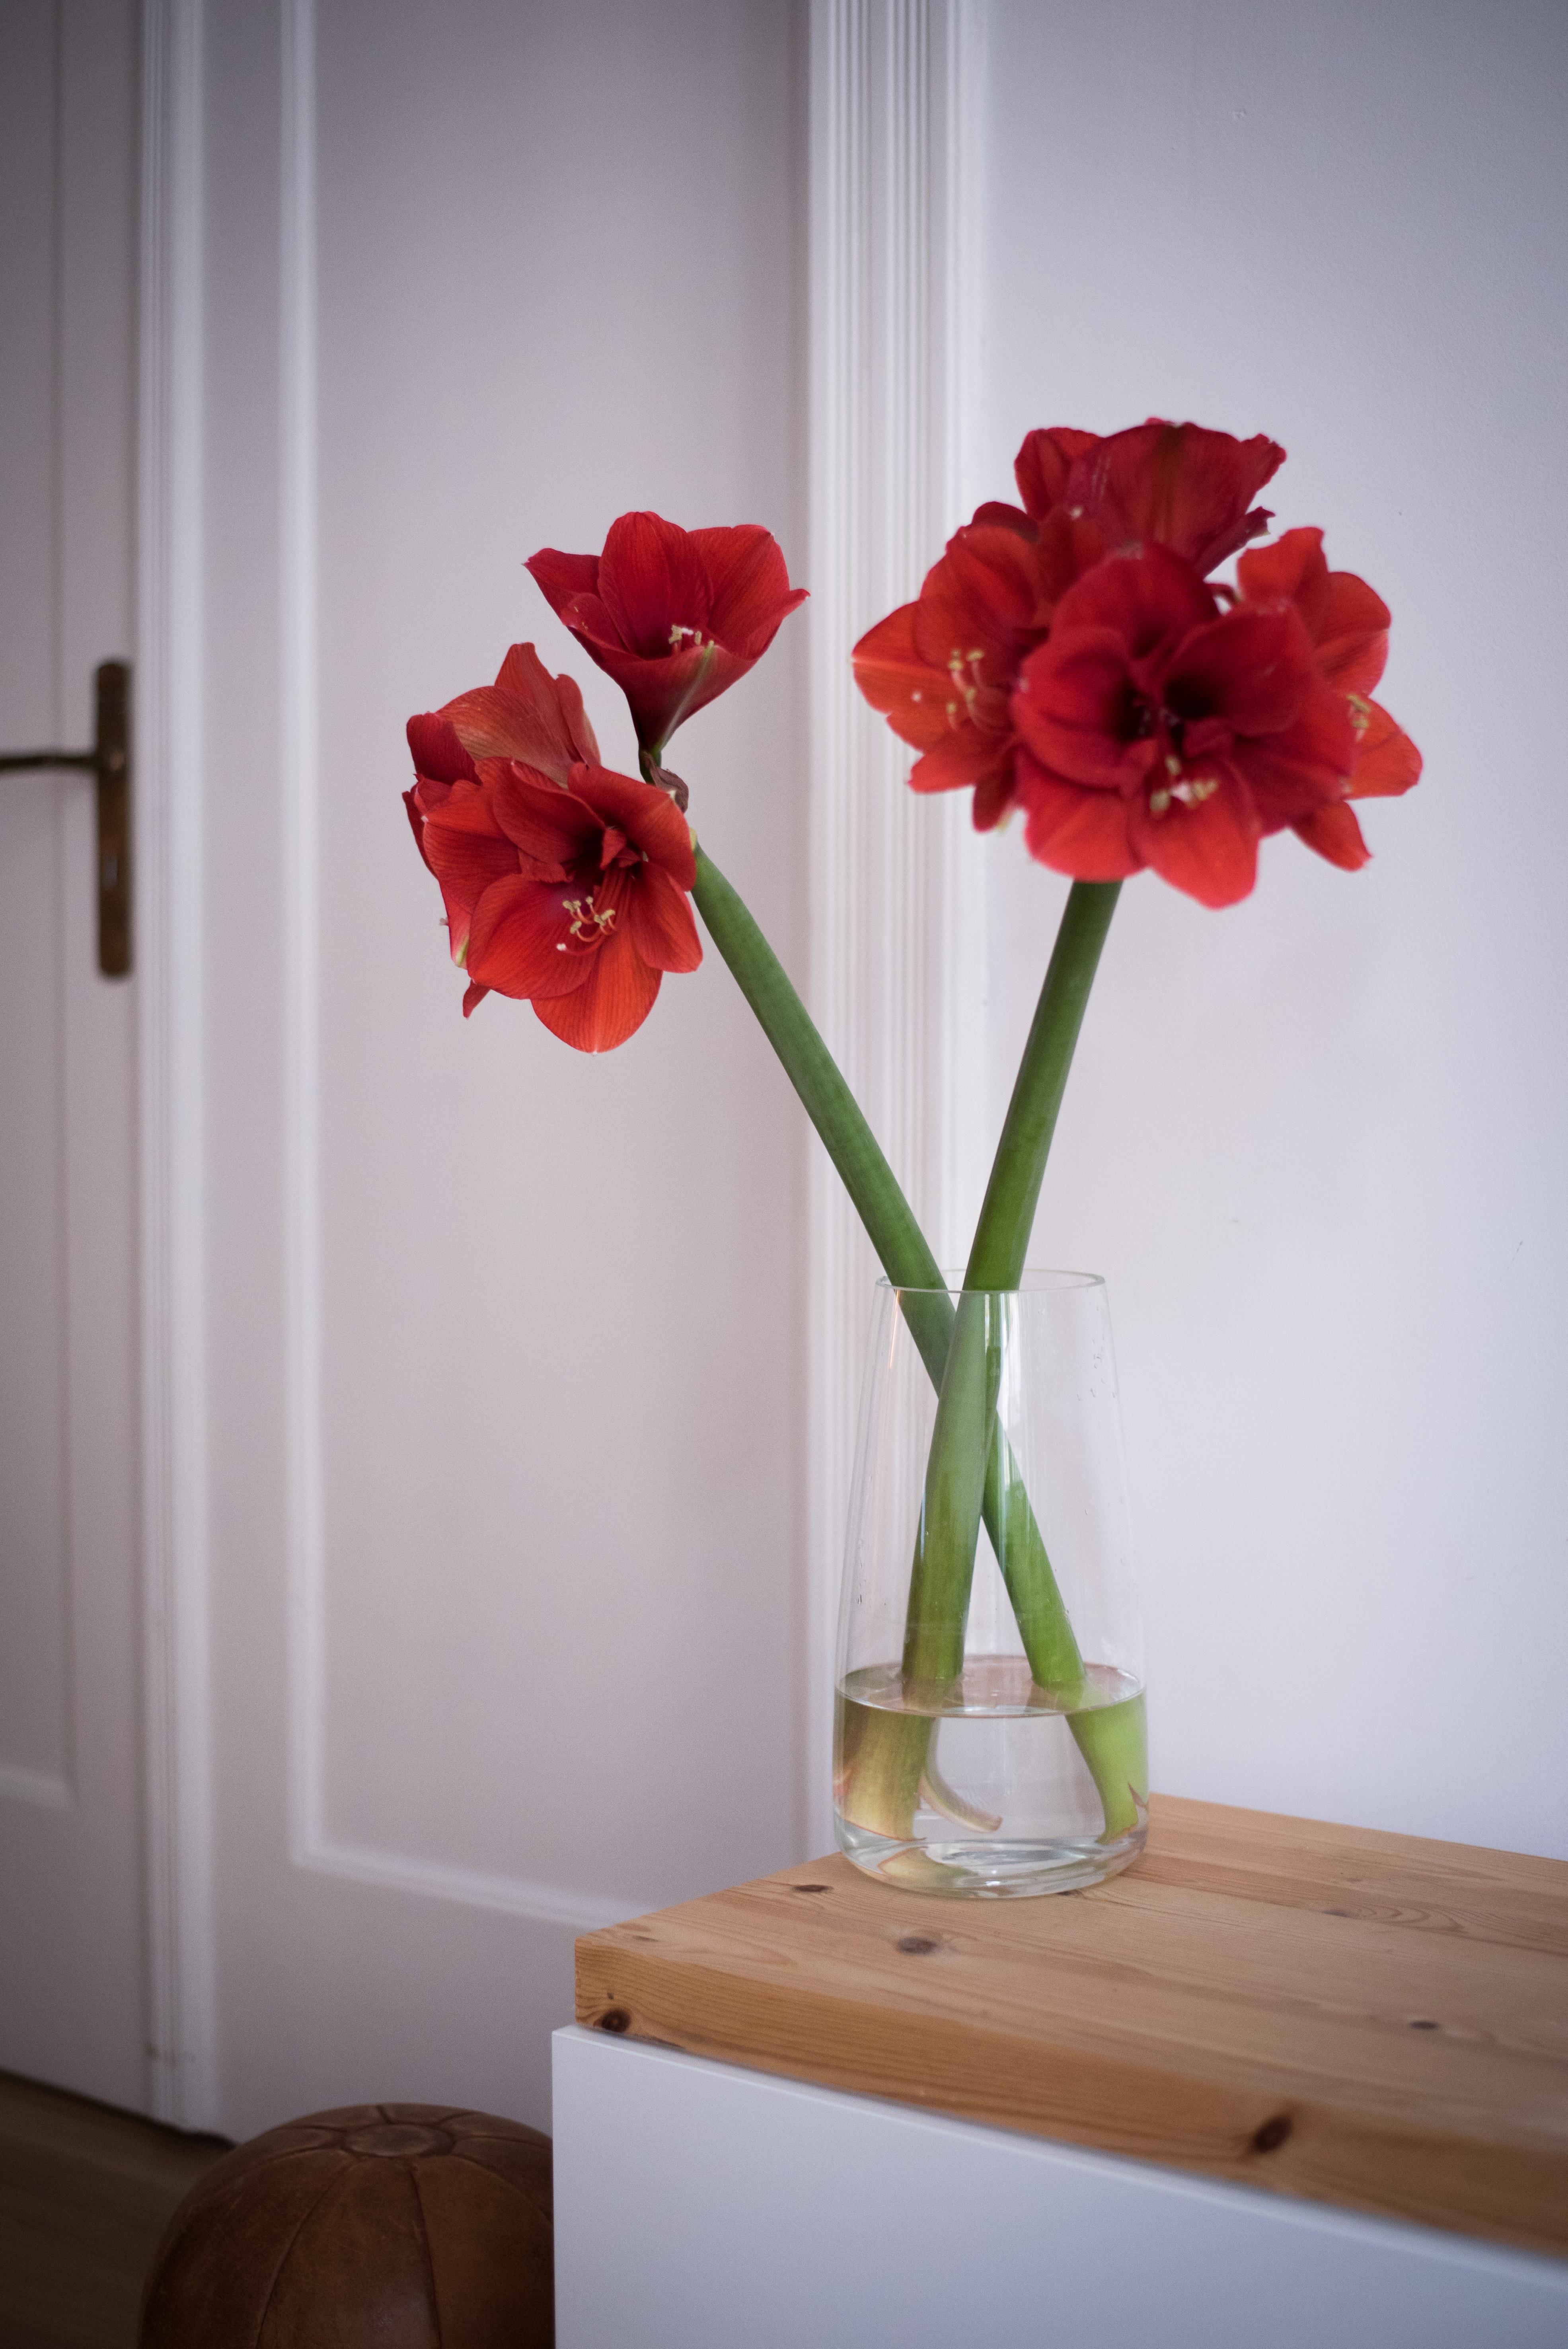 Freitagsblumen! Habt ein schönes, erstes Adventwochenende! #freshflowers #interior #decoration